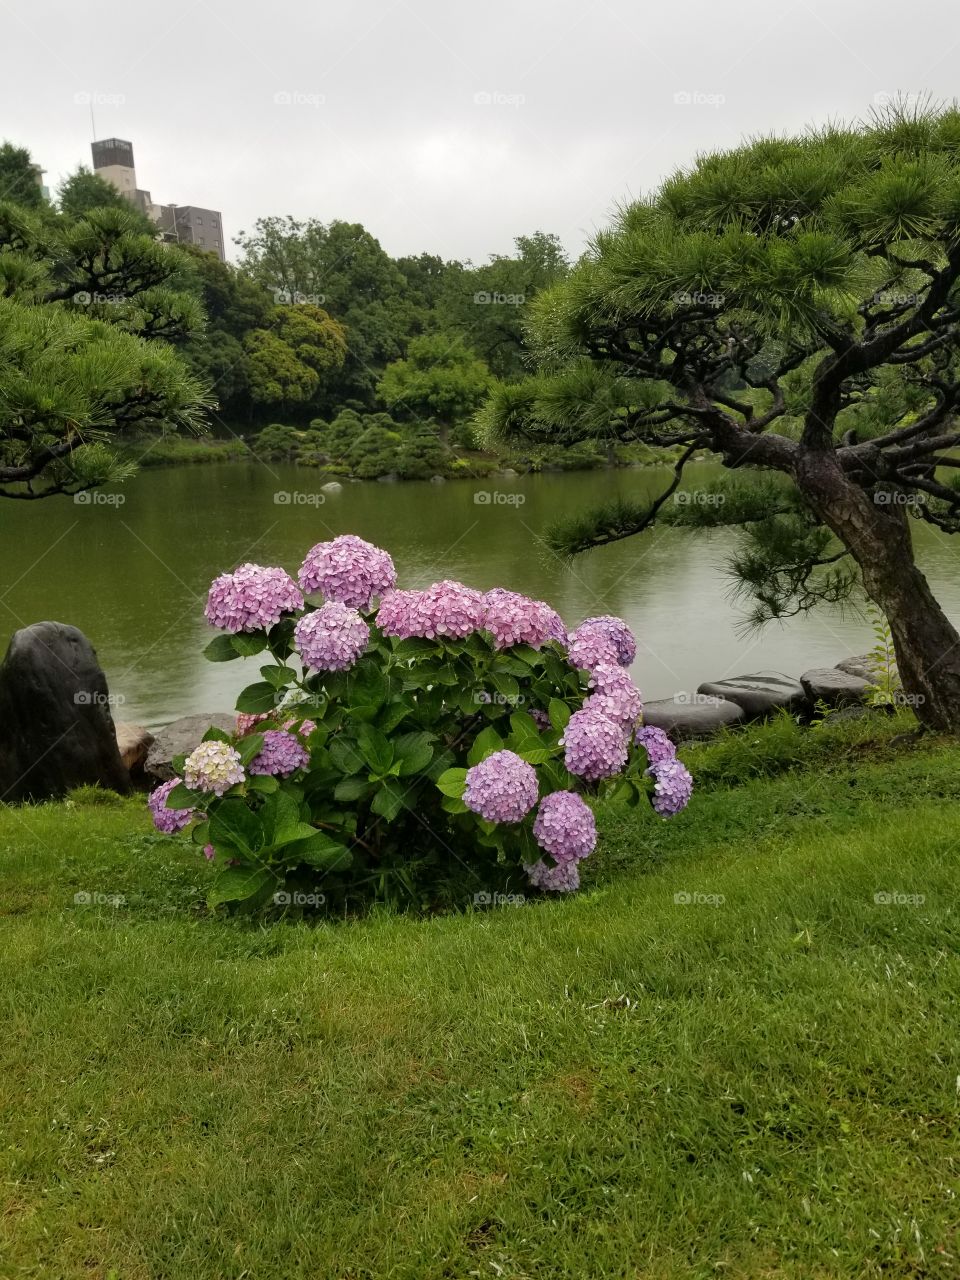 Hydrangeas in Tokyo